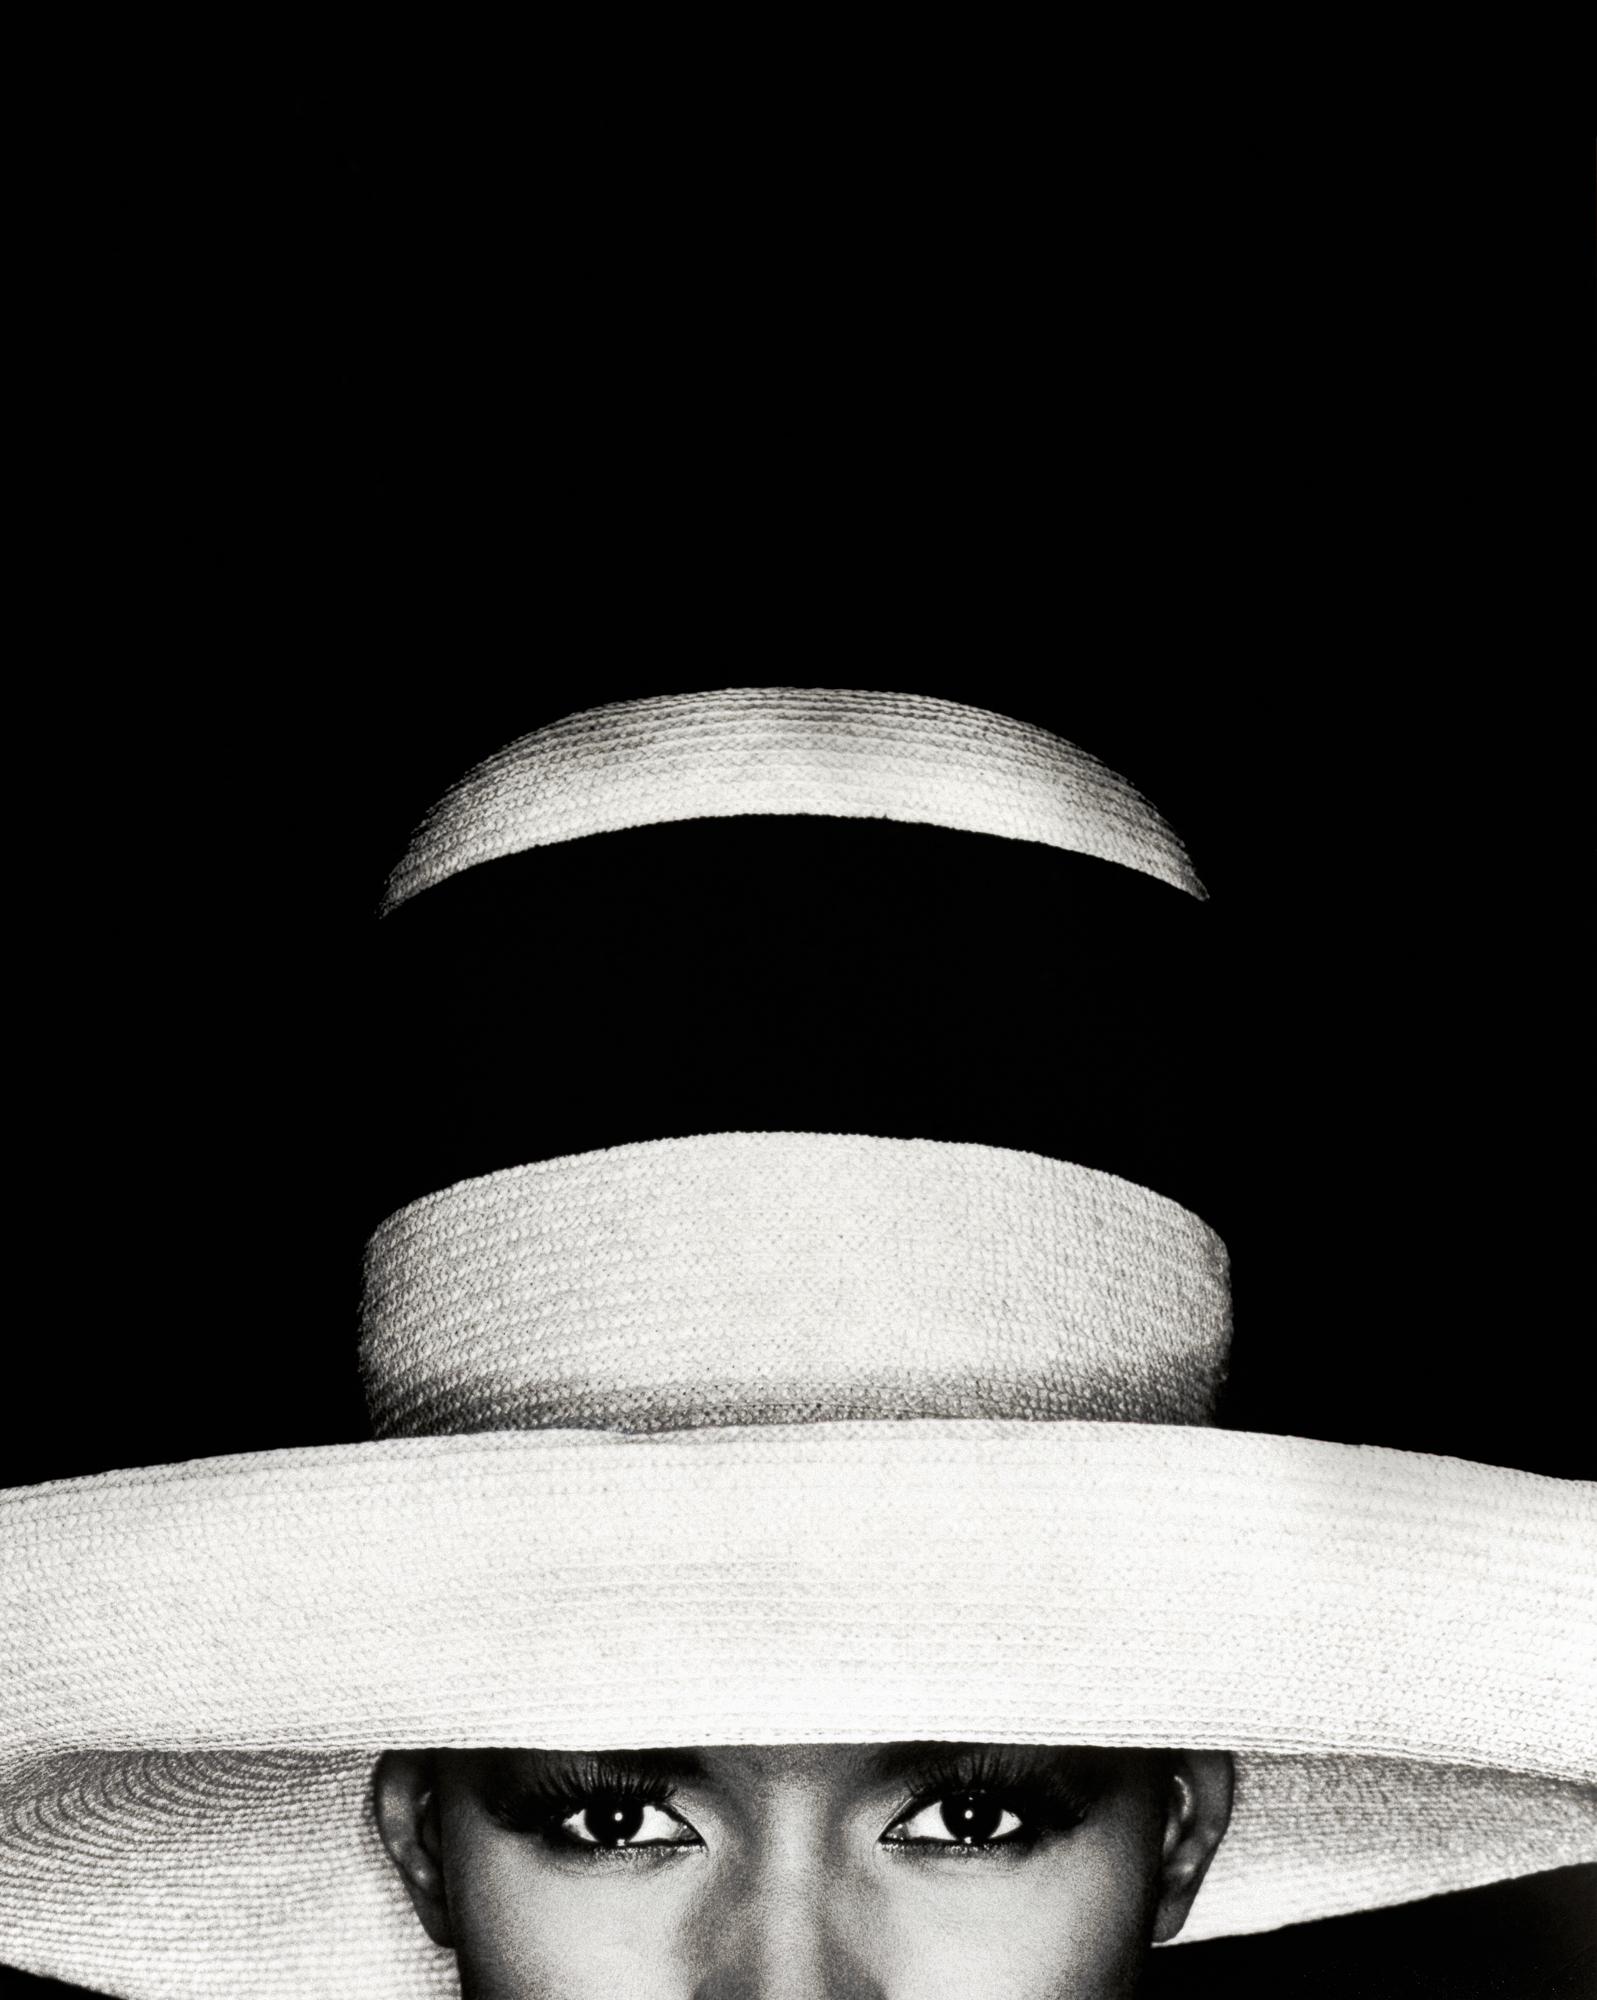 Black and White Photograph Greg Gorman - Grace Jones avec chapeau, Los Angeles, XXIe siècle, contemporain, célébrités